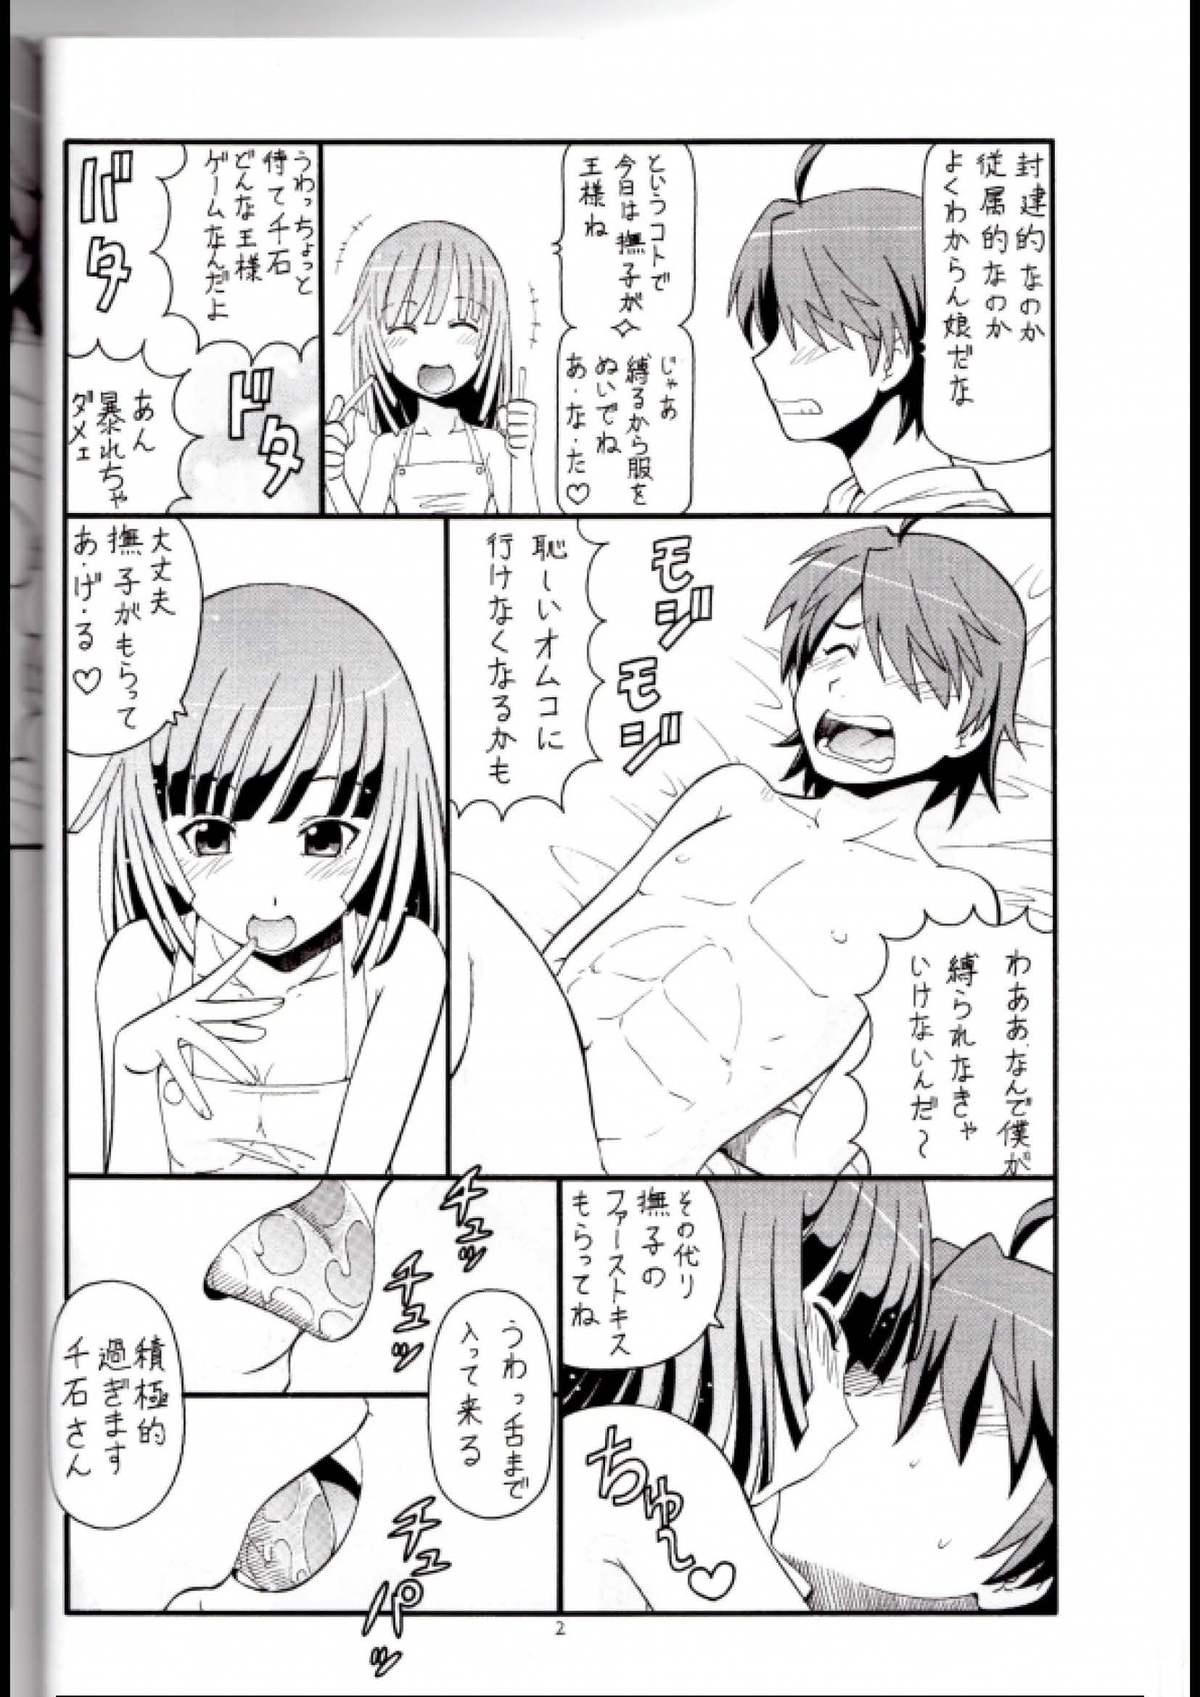 Sentando Hito ni Hakanai to Kaite "Araragi" to Yomu 2&3 - Bakemonogatari Mama - Page 3